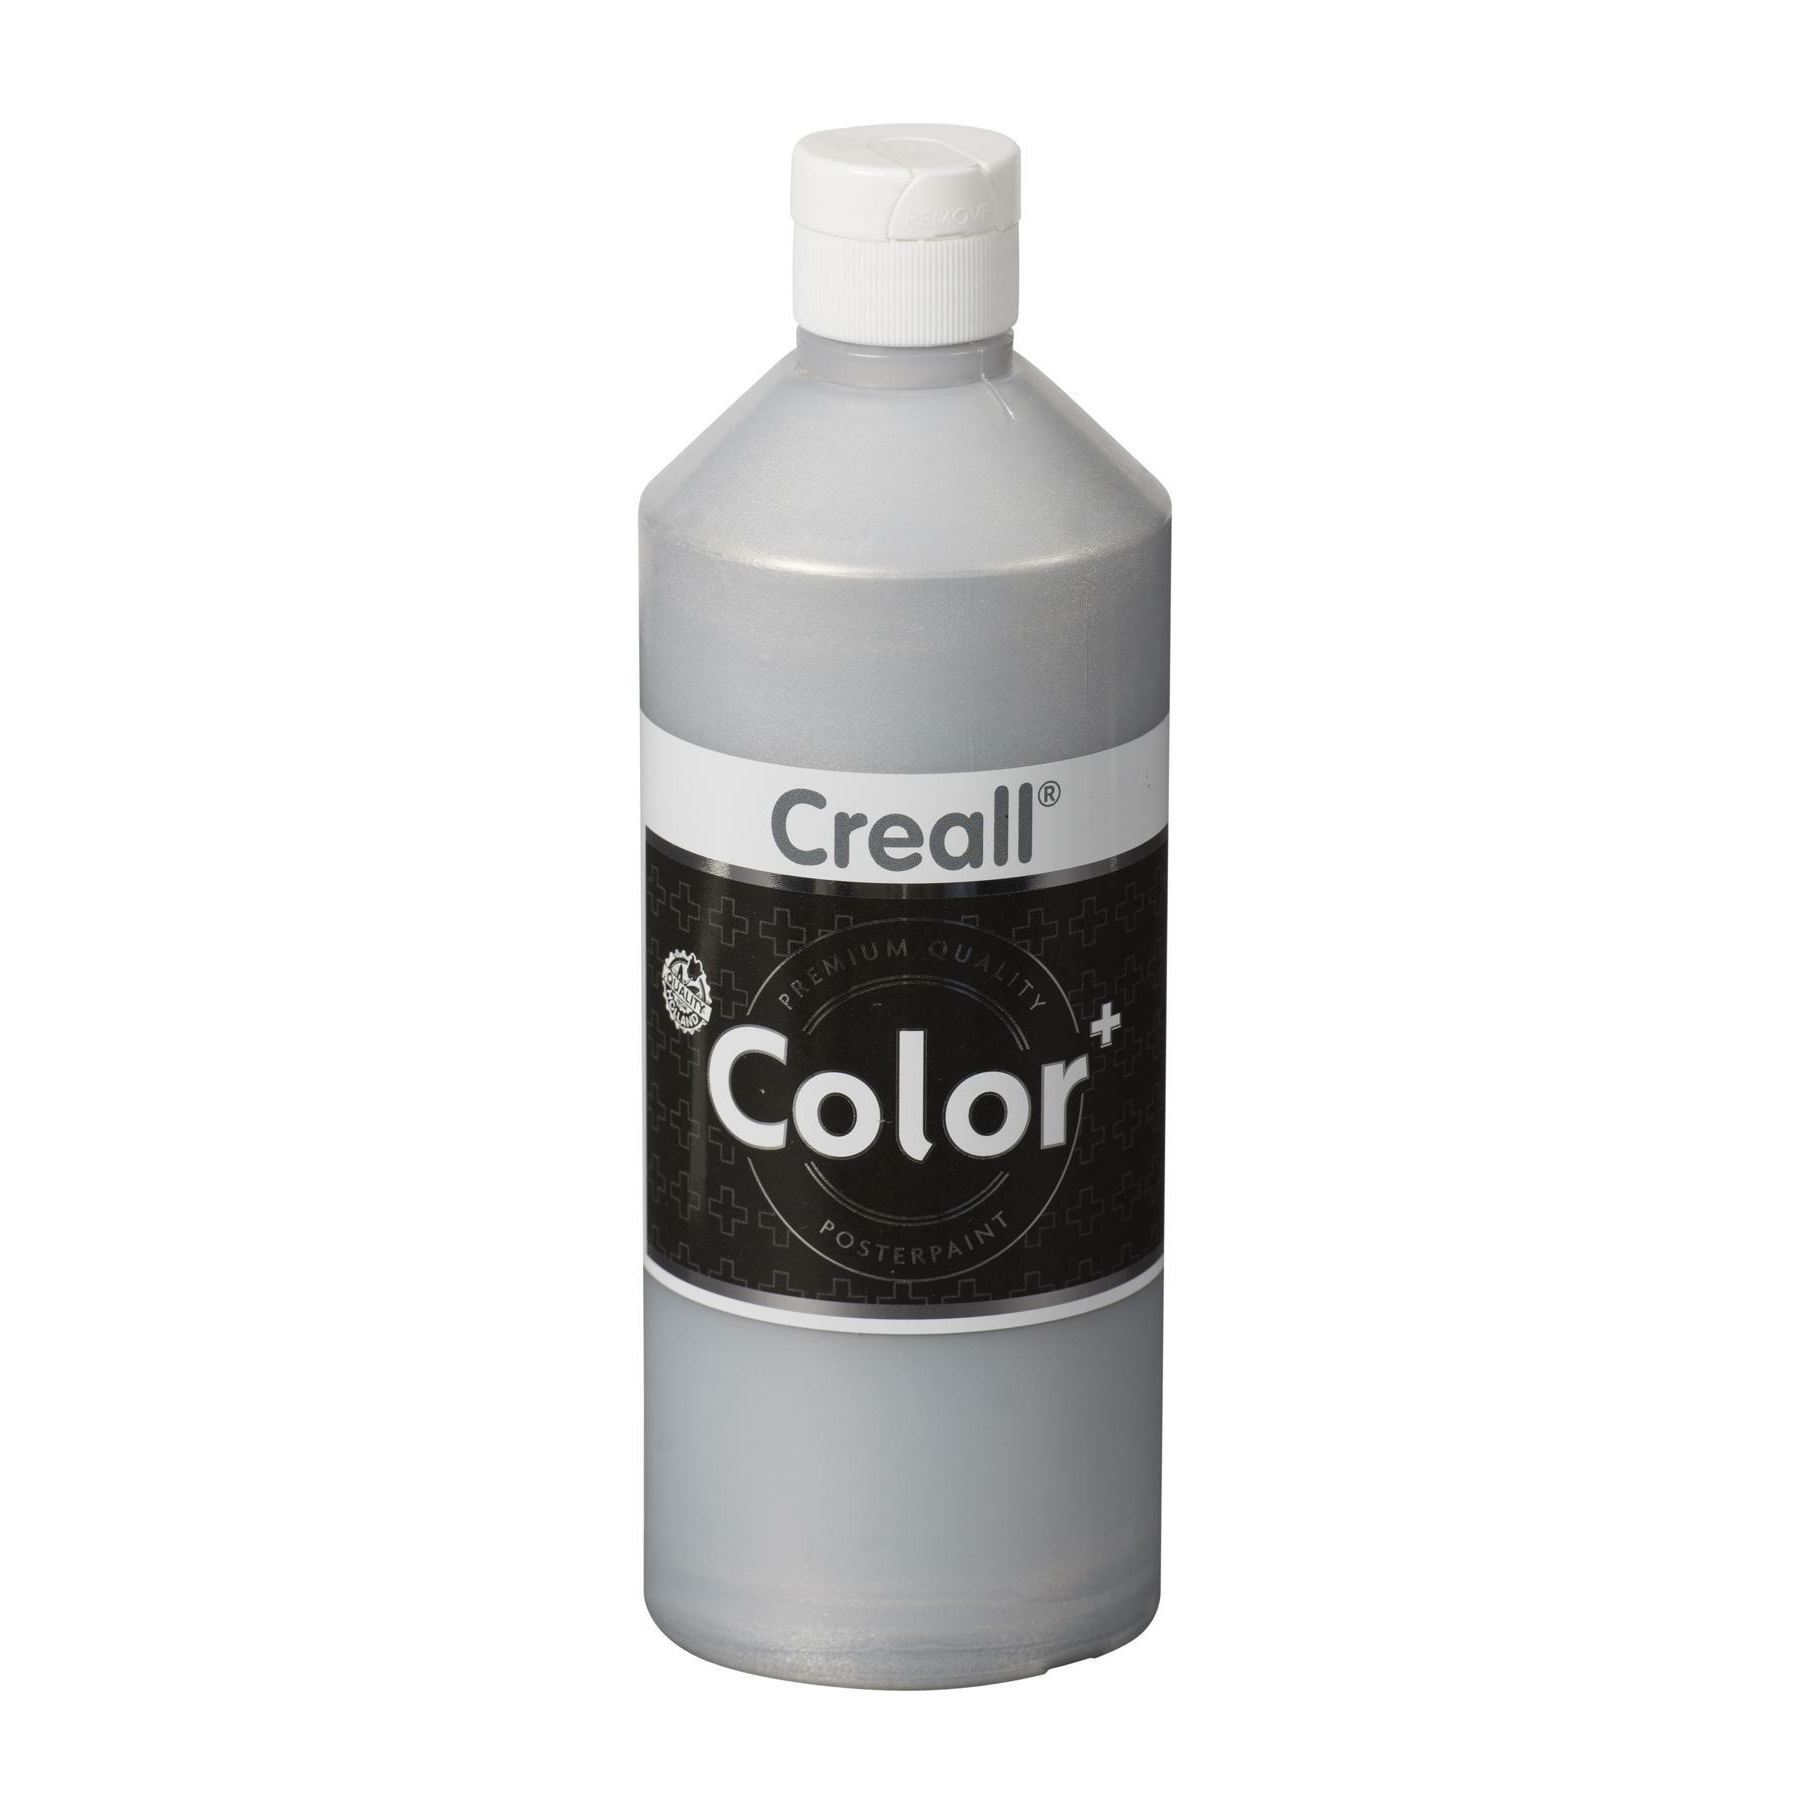 Temperová barva Creall Color, stříbrná, 500ml